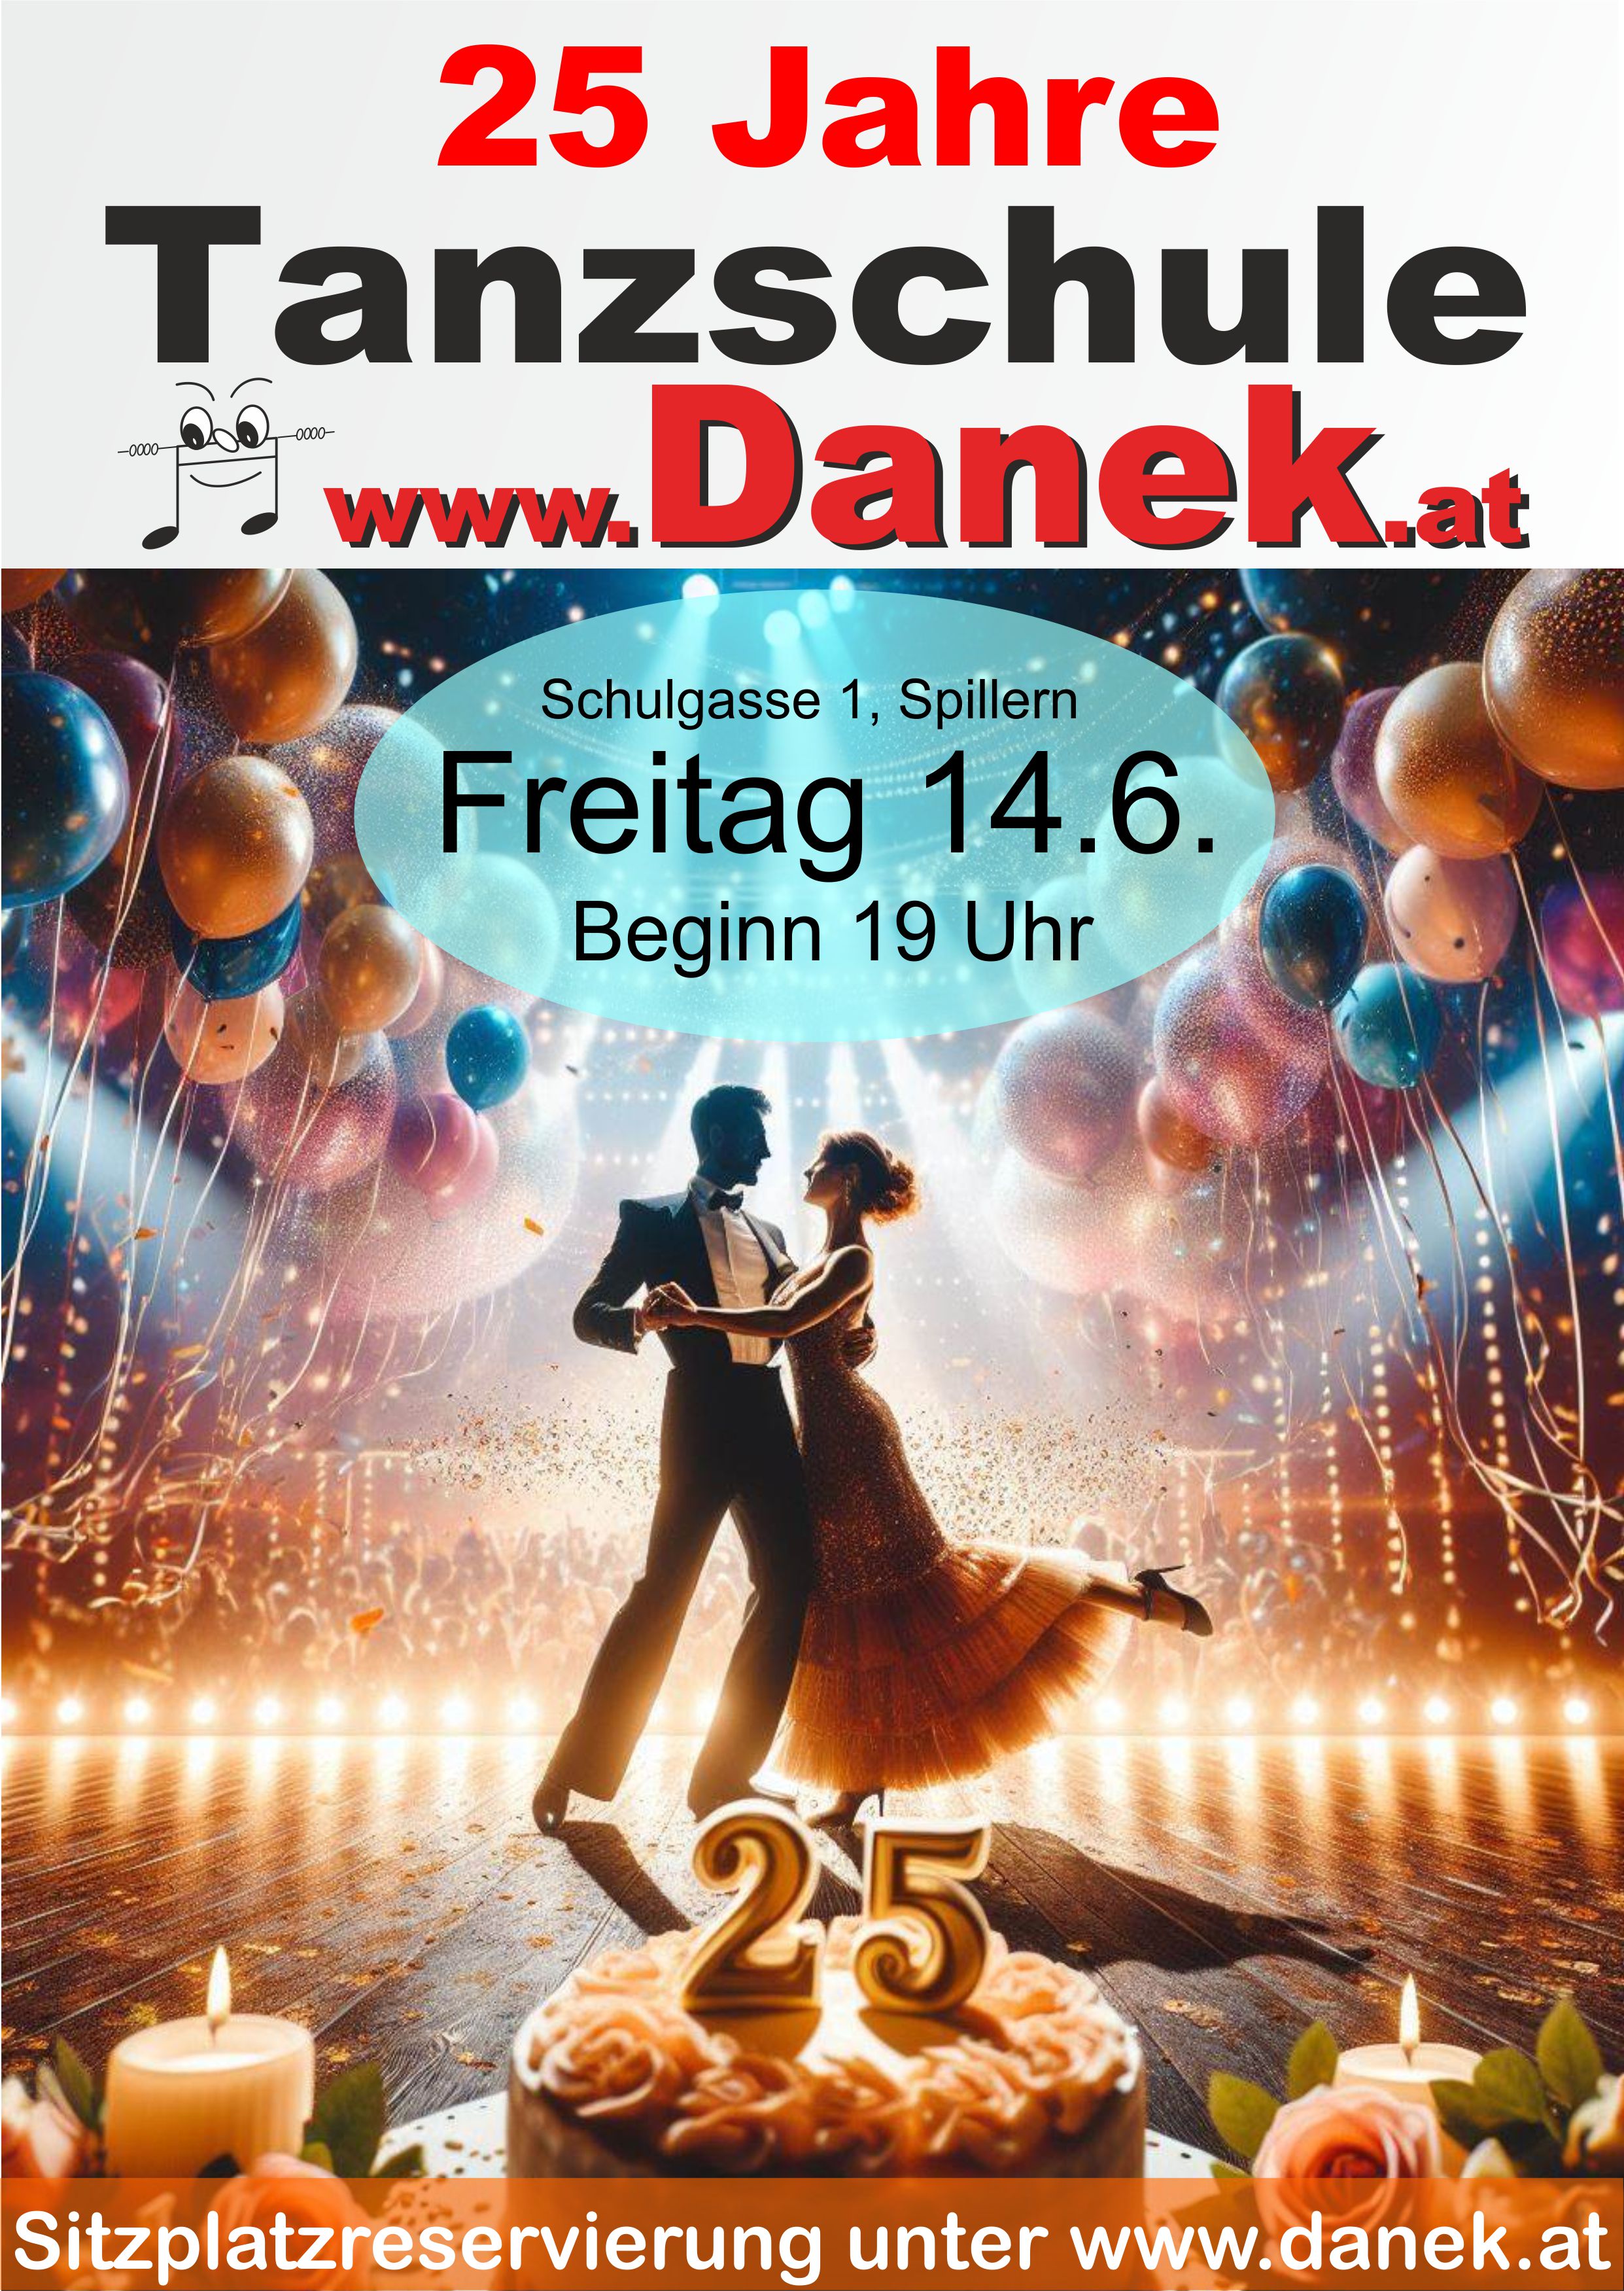 25 Jahre Tanzschule Danek